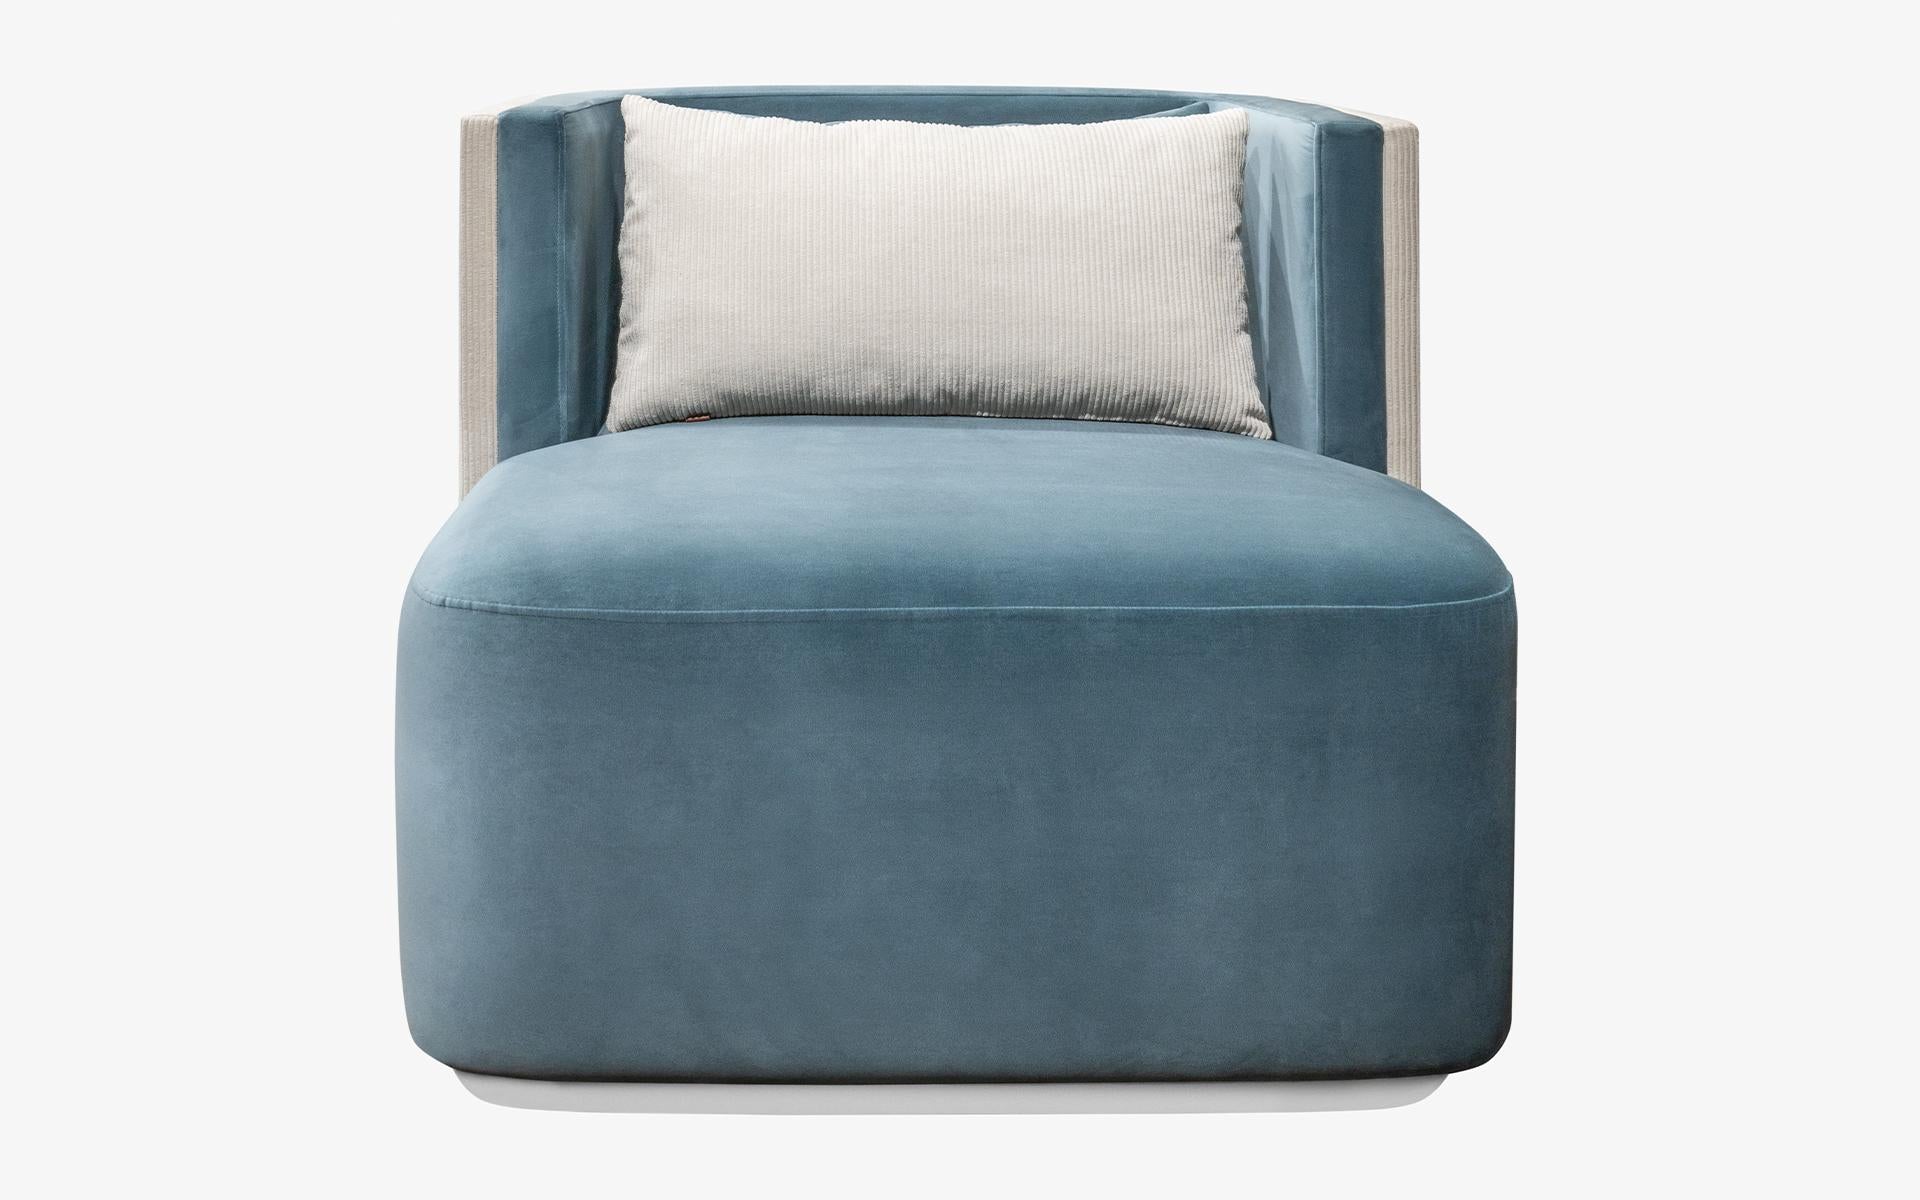 Der Papillonne-Sessel ergänzt Ihren Stil mit seiner makellosen Form und seinem unvergleichlichen Komfort und verleiht Ihrem Raum einen einzigartigen Charakter... 

Wenn Sie das abstrakte Muster mögen, kontaktieren Sie uns bitte für andere Farben.